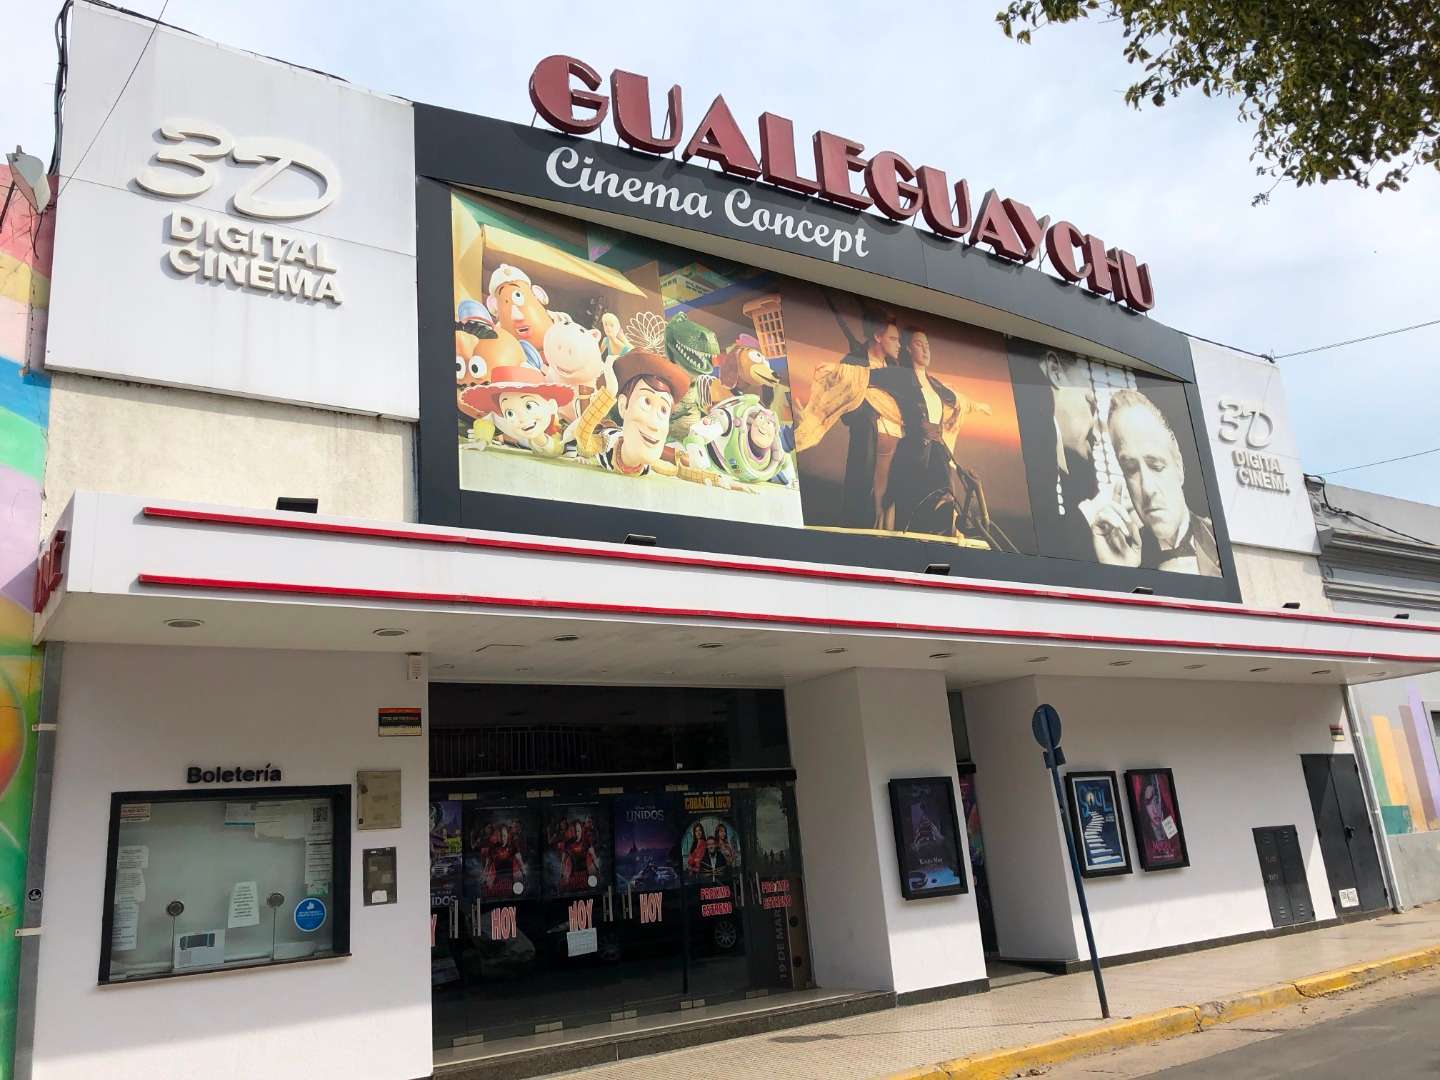 ¿Se viene otra sala de cine en Gualeguaychú? Comenzaron las charlas por una posible ampliación